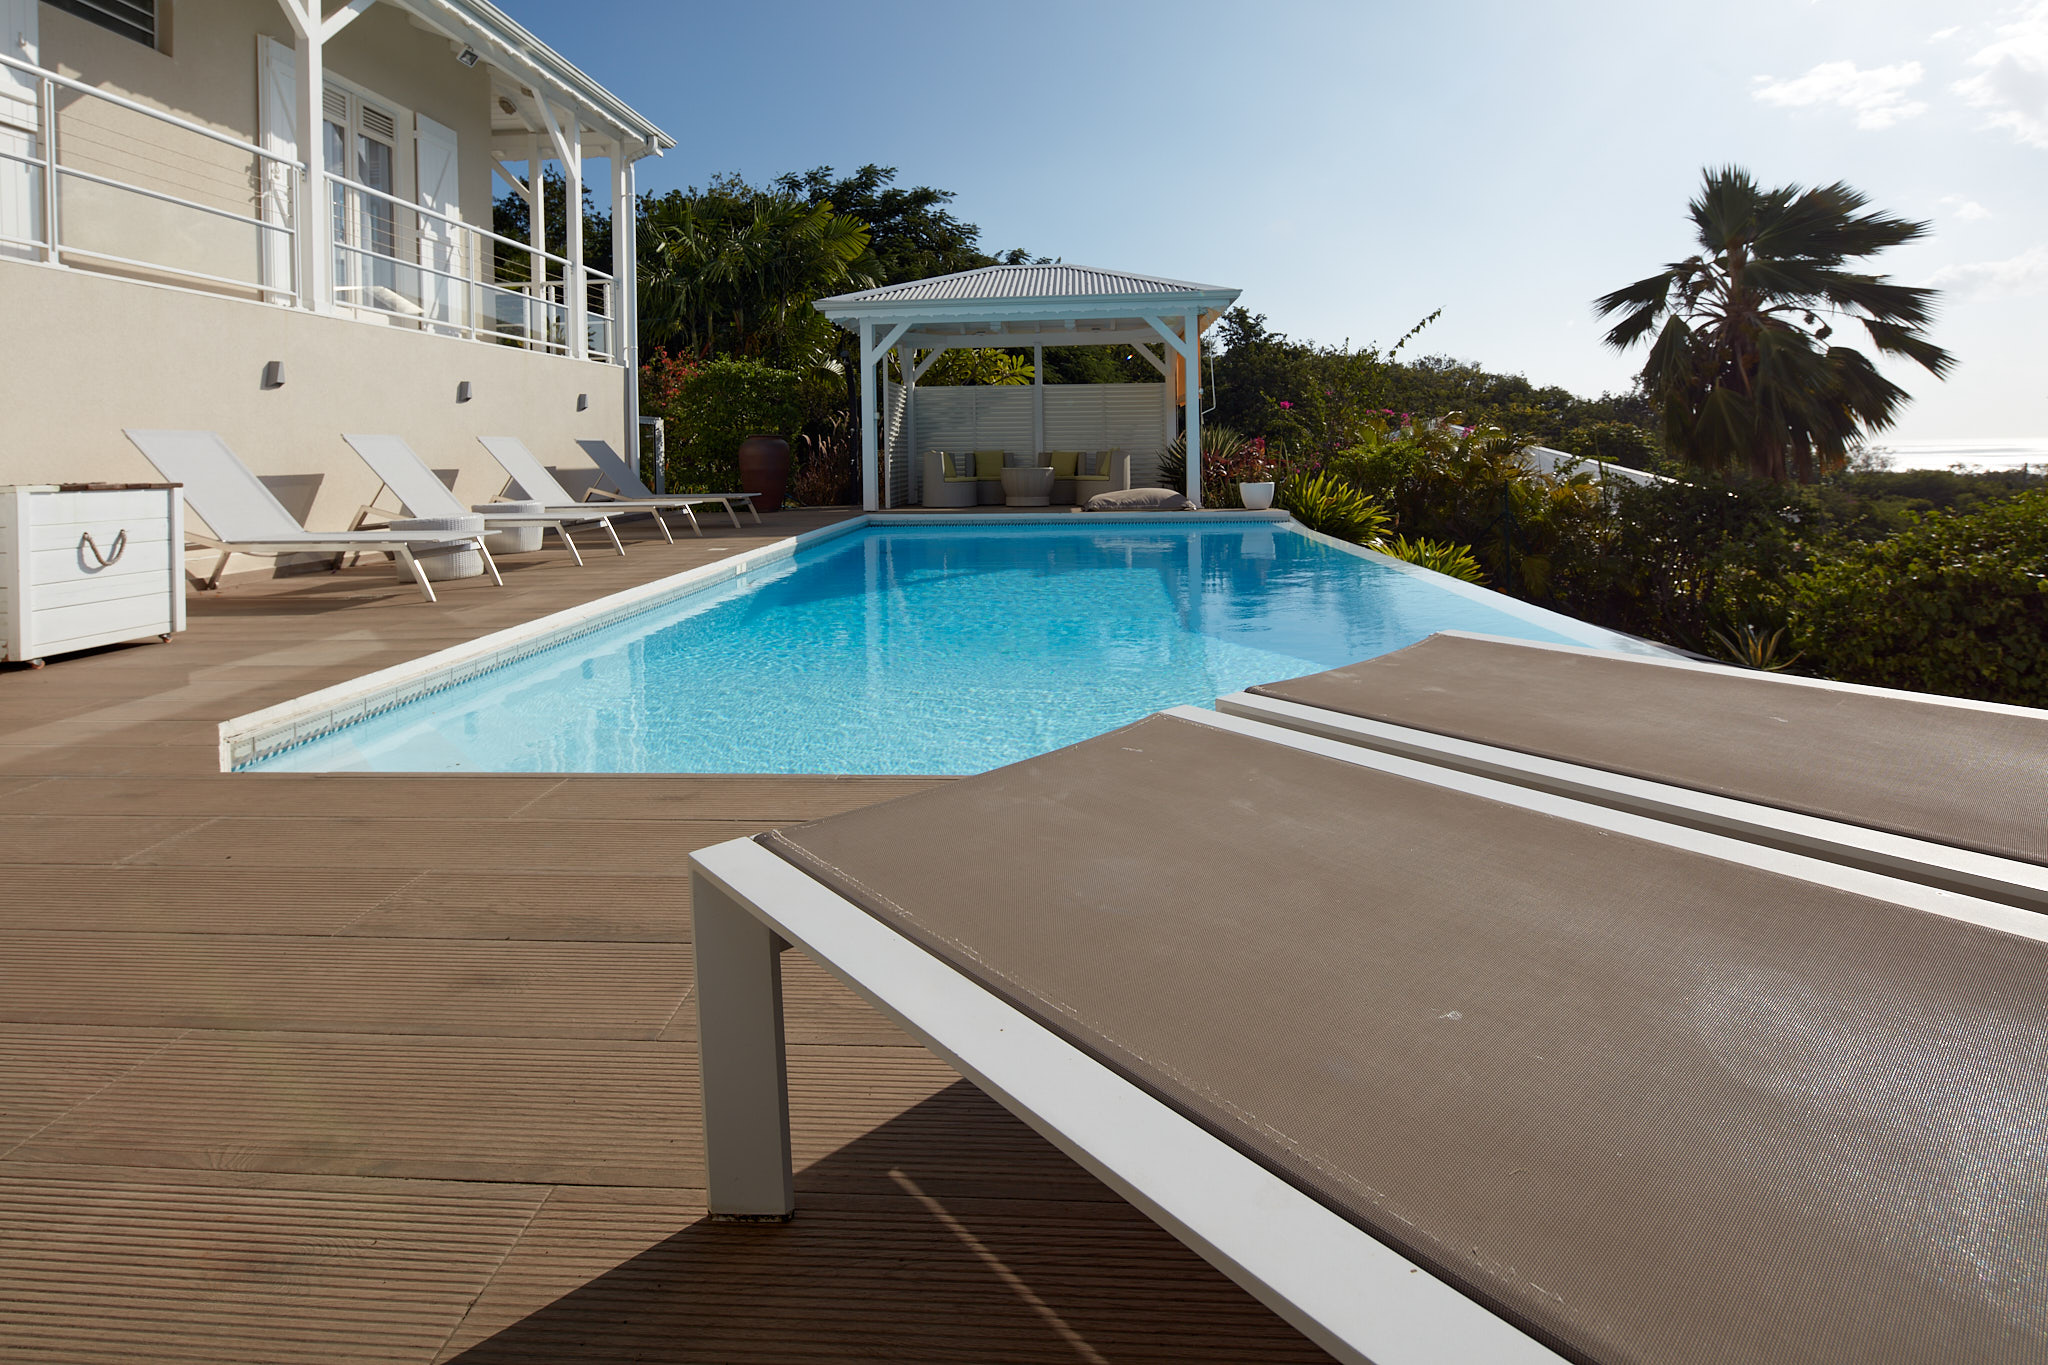 Profitez pleinement de ce bel espace piscine, juste au bas de la terrasse.